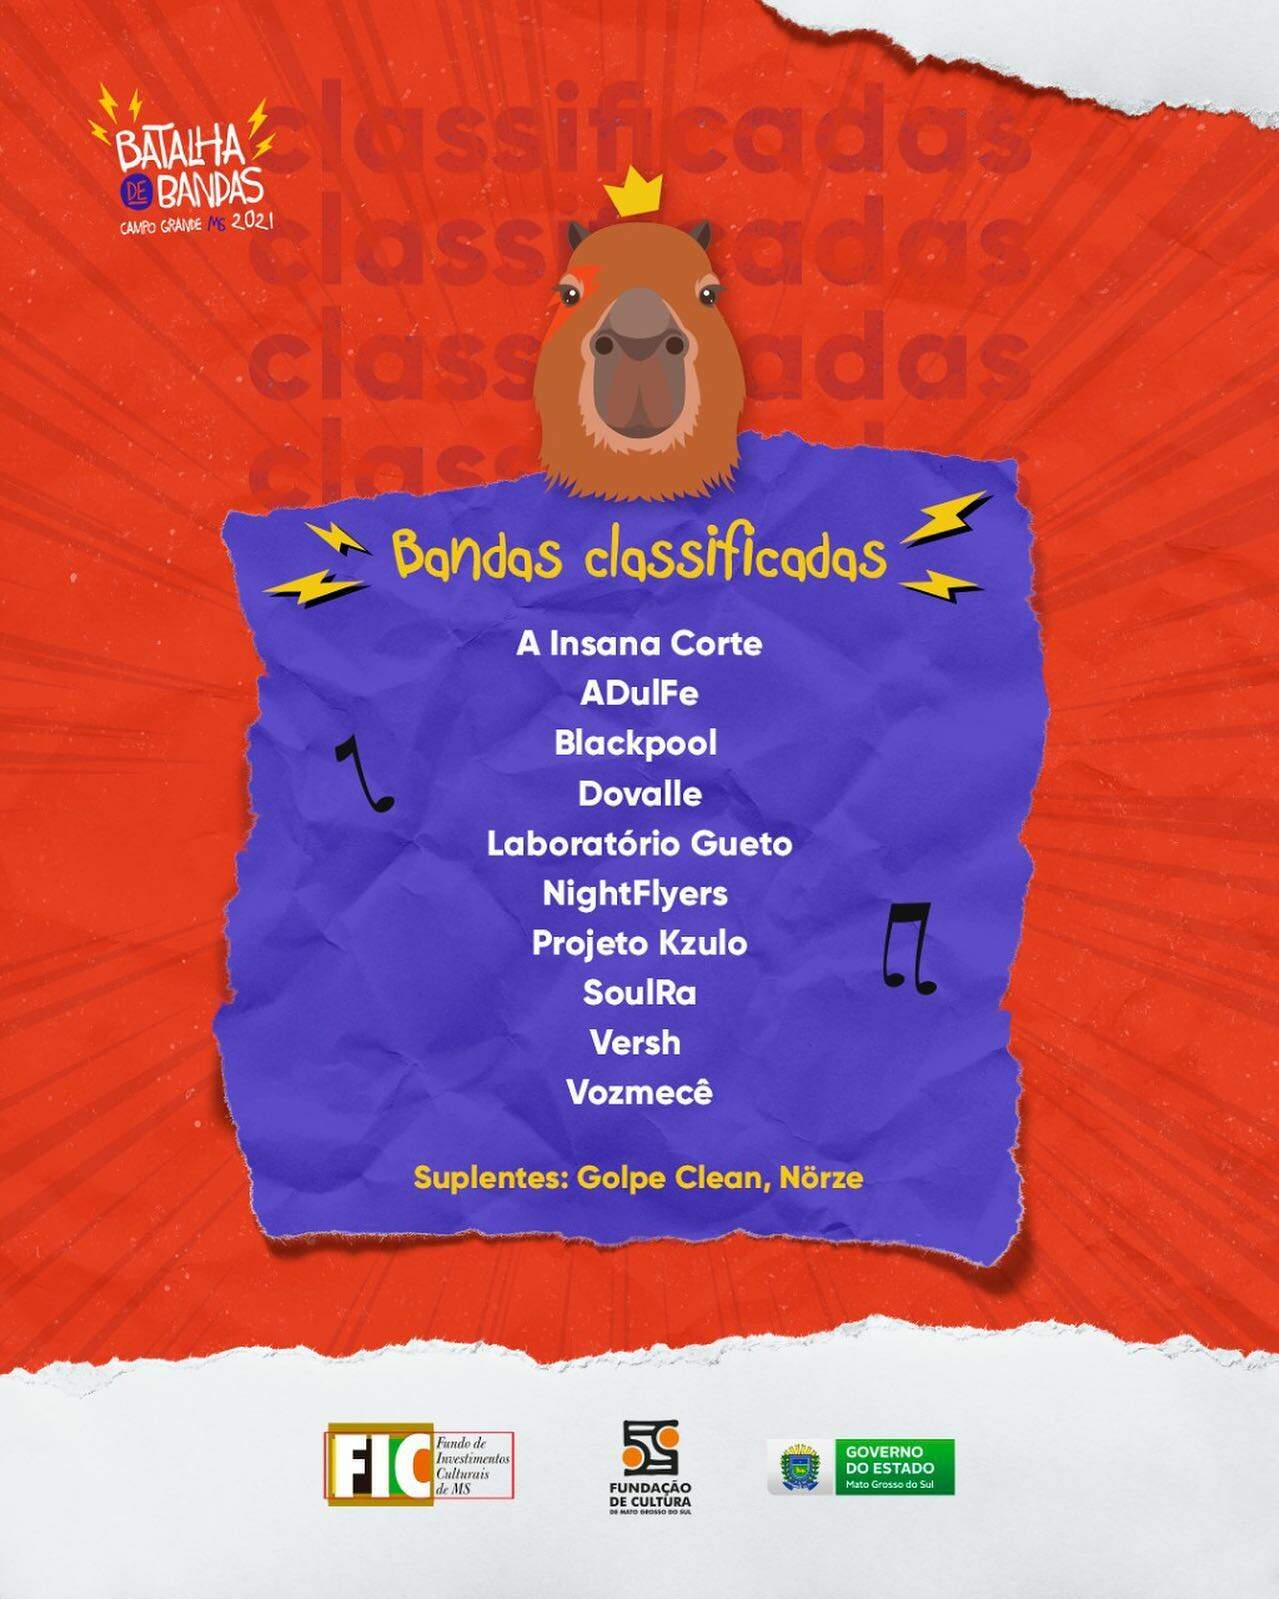 238603334 5945949335477972 8942383033311072752 n - Divulgado! Festival 'Batalha de Bandas' revela lista dos classificados em MS